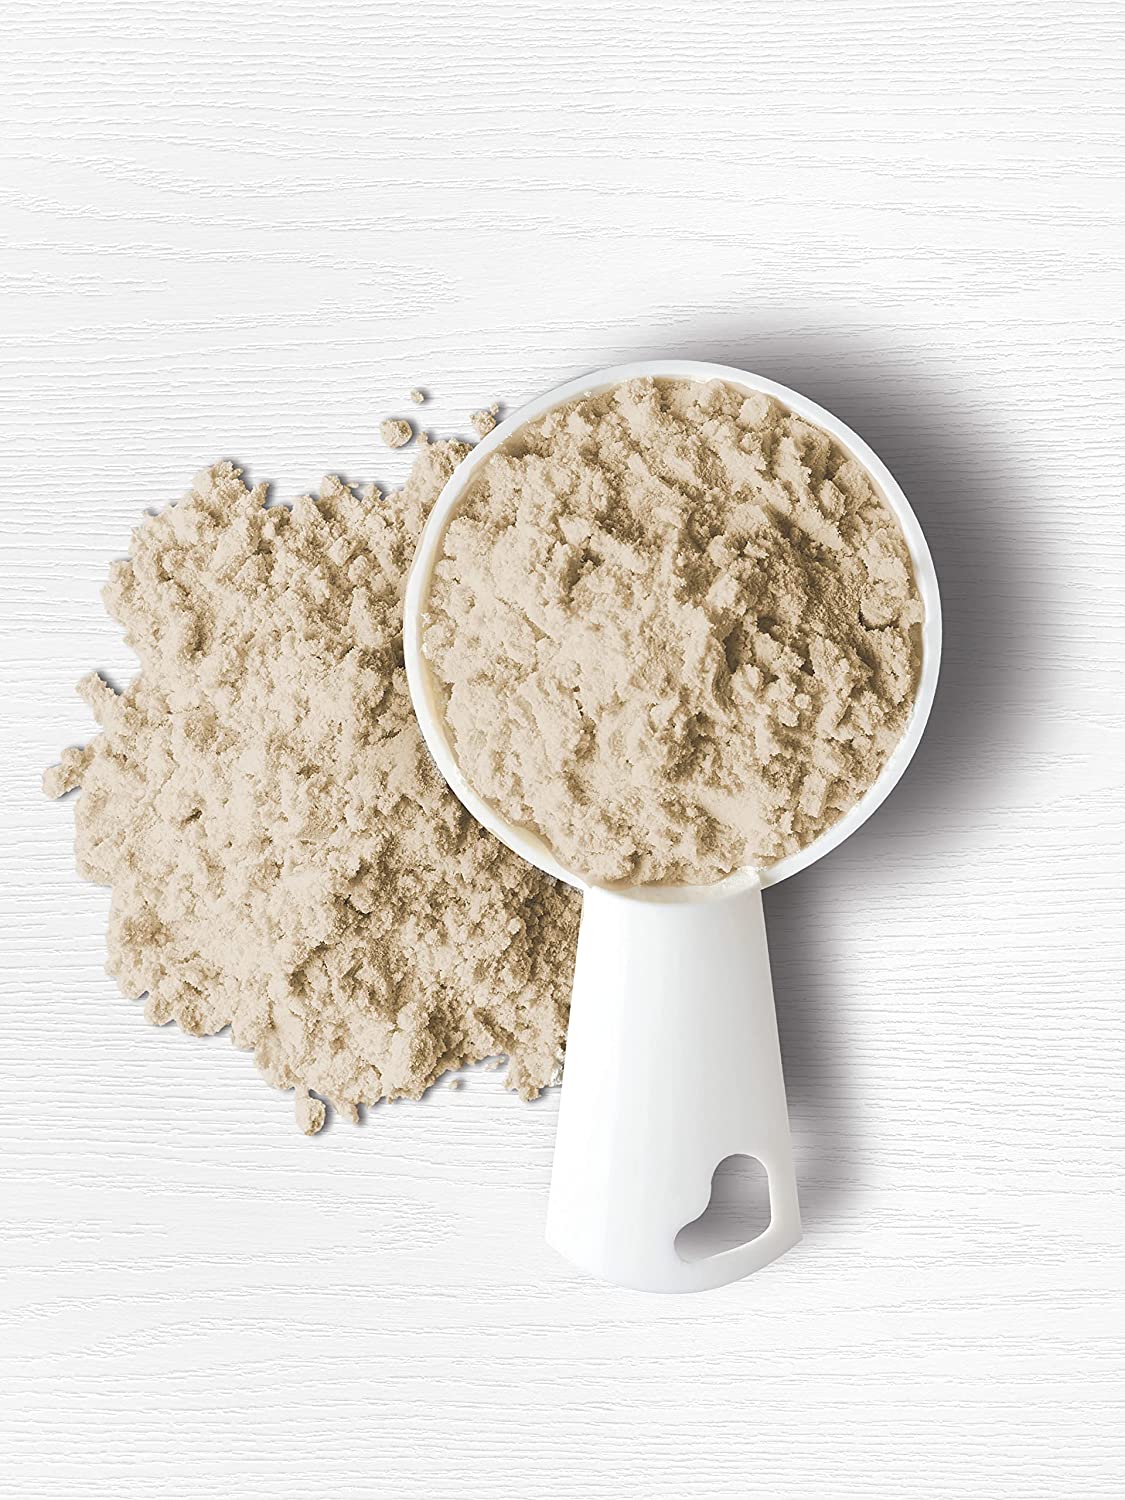 Pea Protein 29g | 7lbs Powder